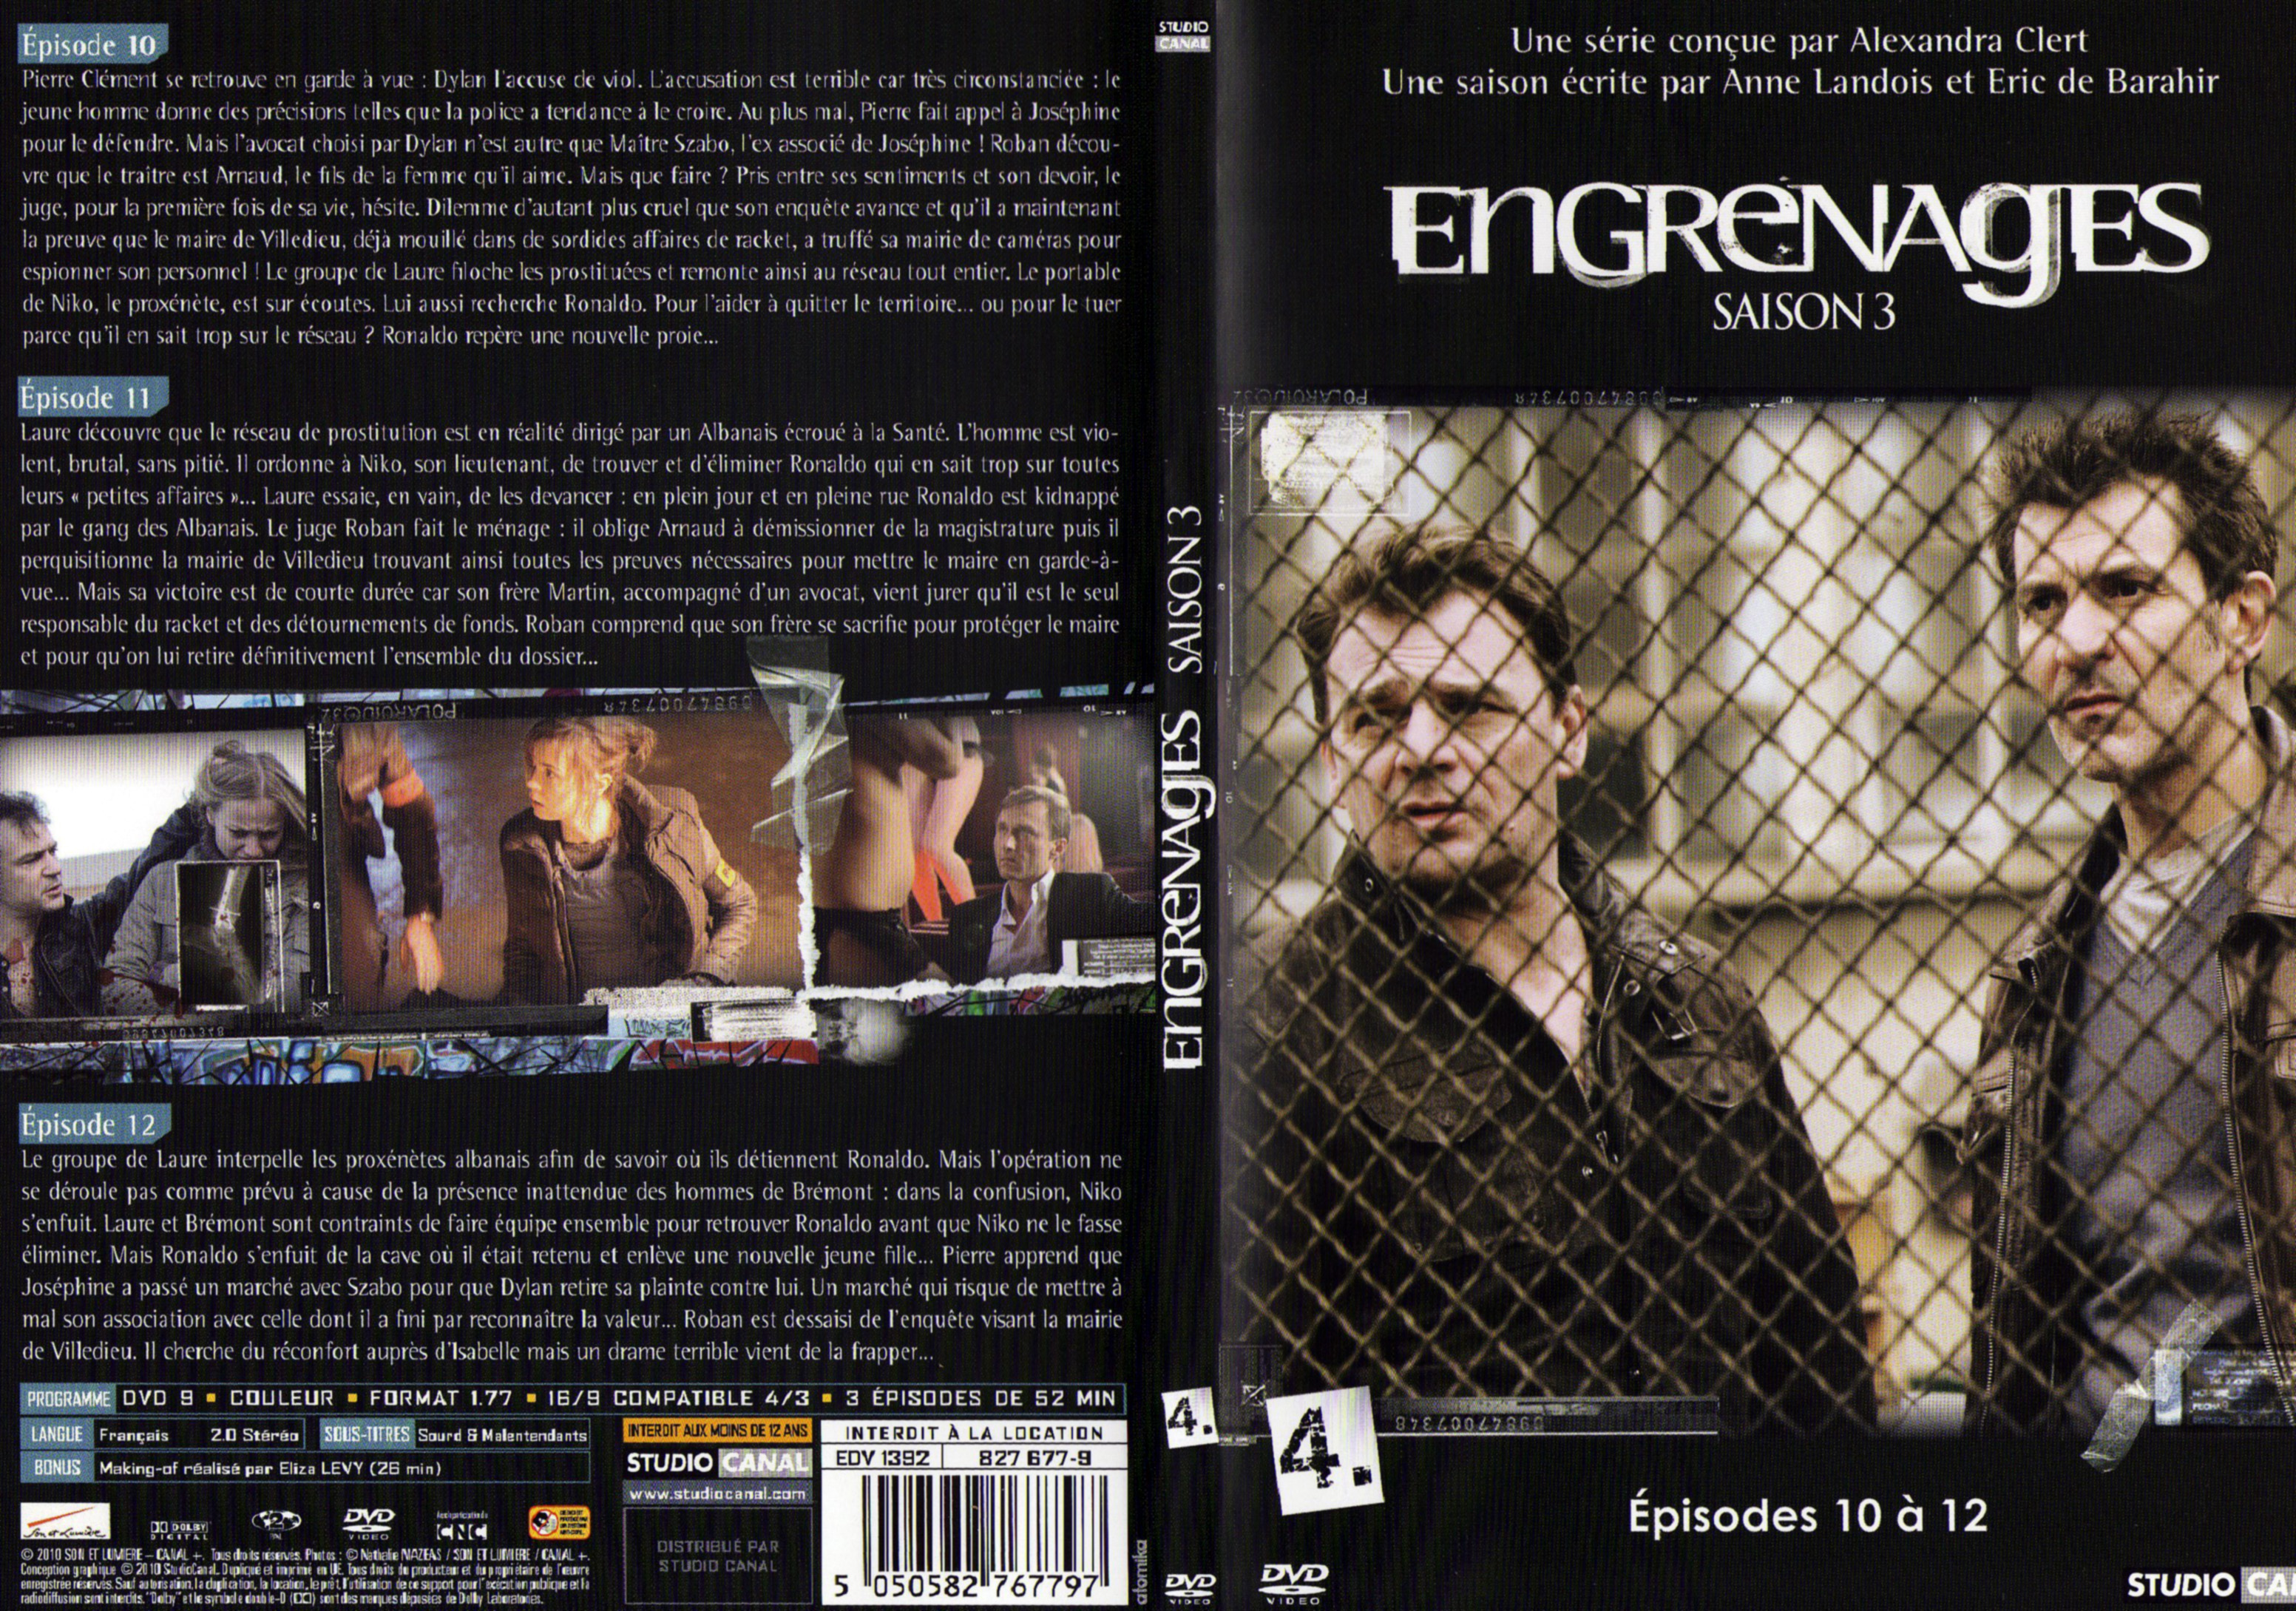 Jaquette DVD Engrenages Saison 3 DVD 4